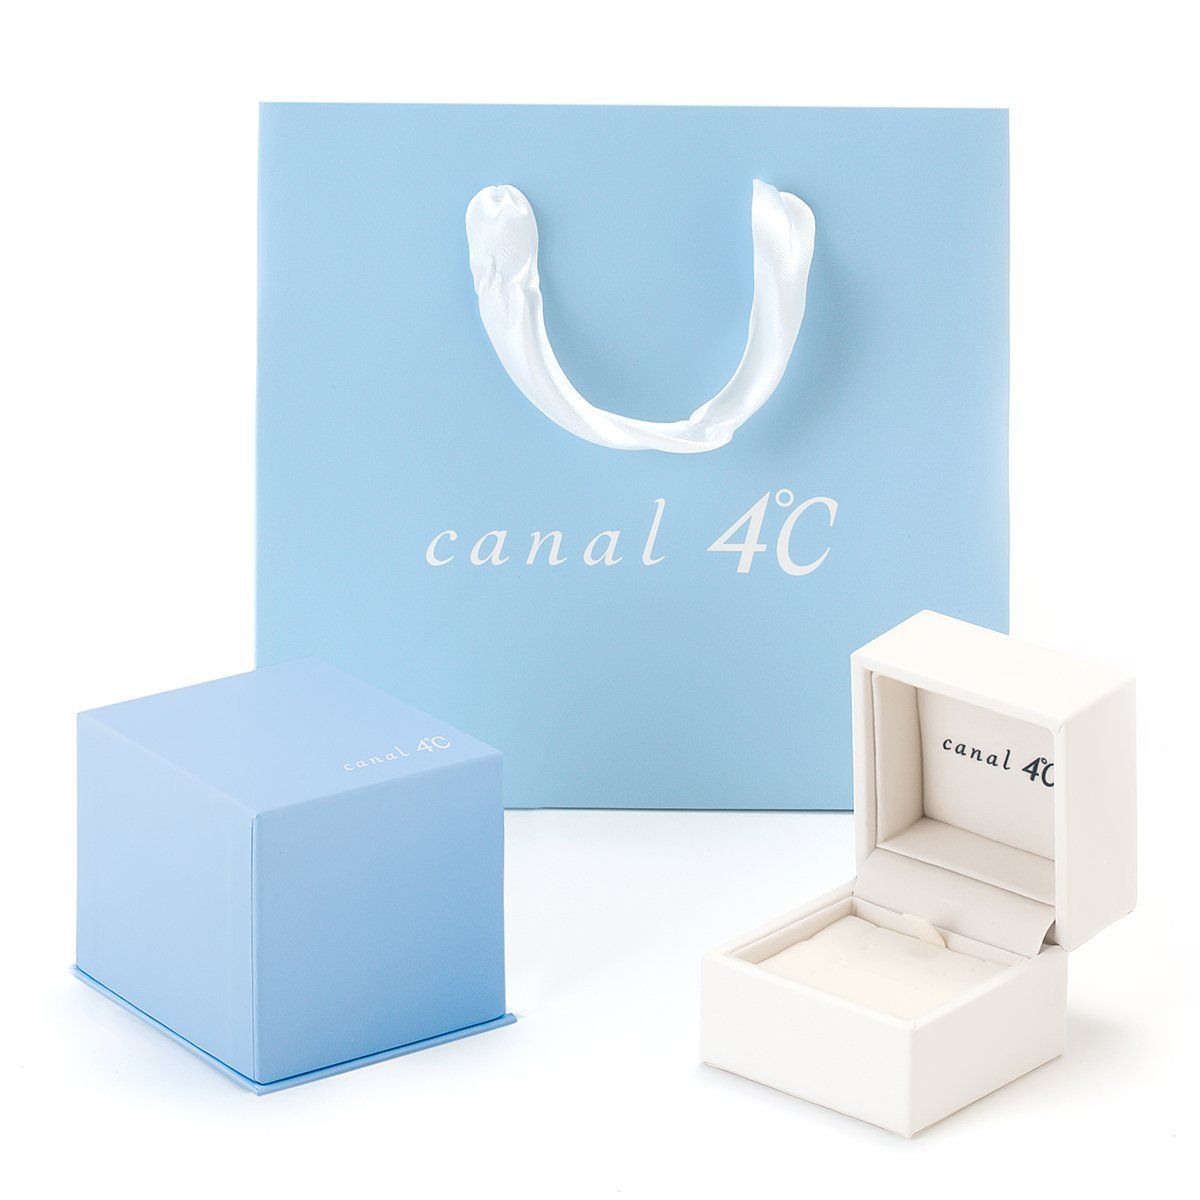 【特価セール】canal4℃(カナルヨンドシー)K10ピンクゴールド(PG)ネッ